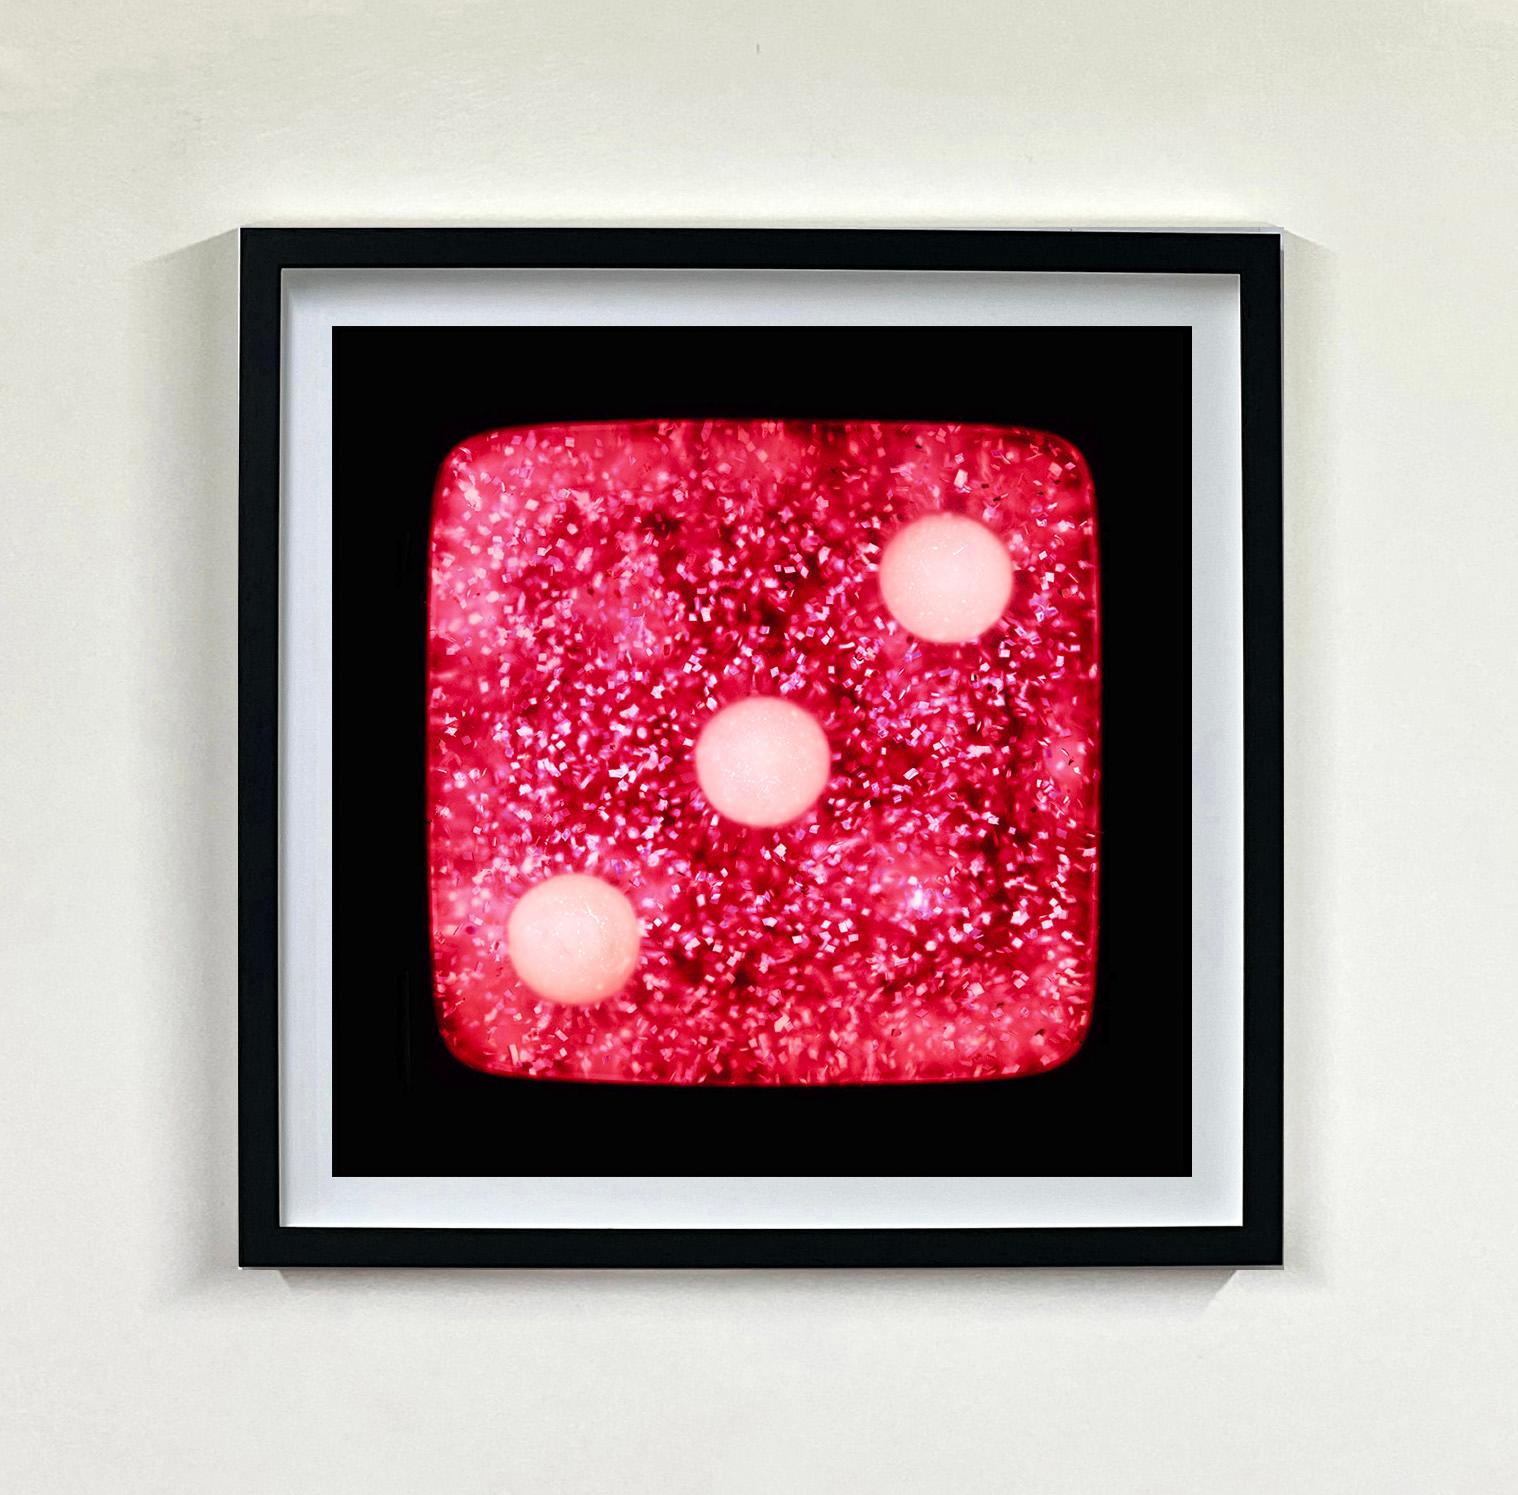 Dice-Serie, Himbeerschalen funkelt drei – Pop-Art-Farbfotografie (Rot), Color Photograph, von Heidler & Heeps